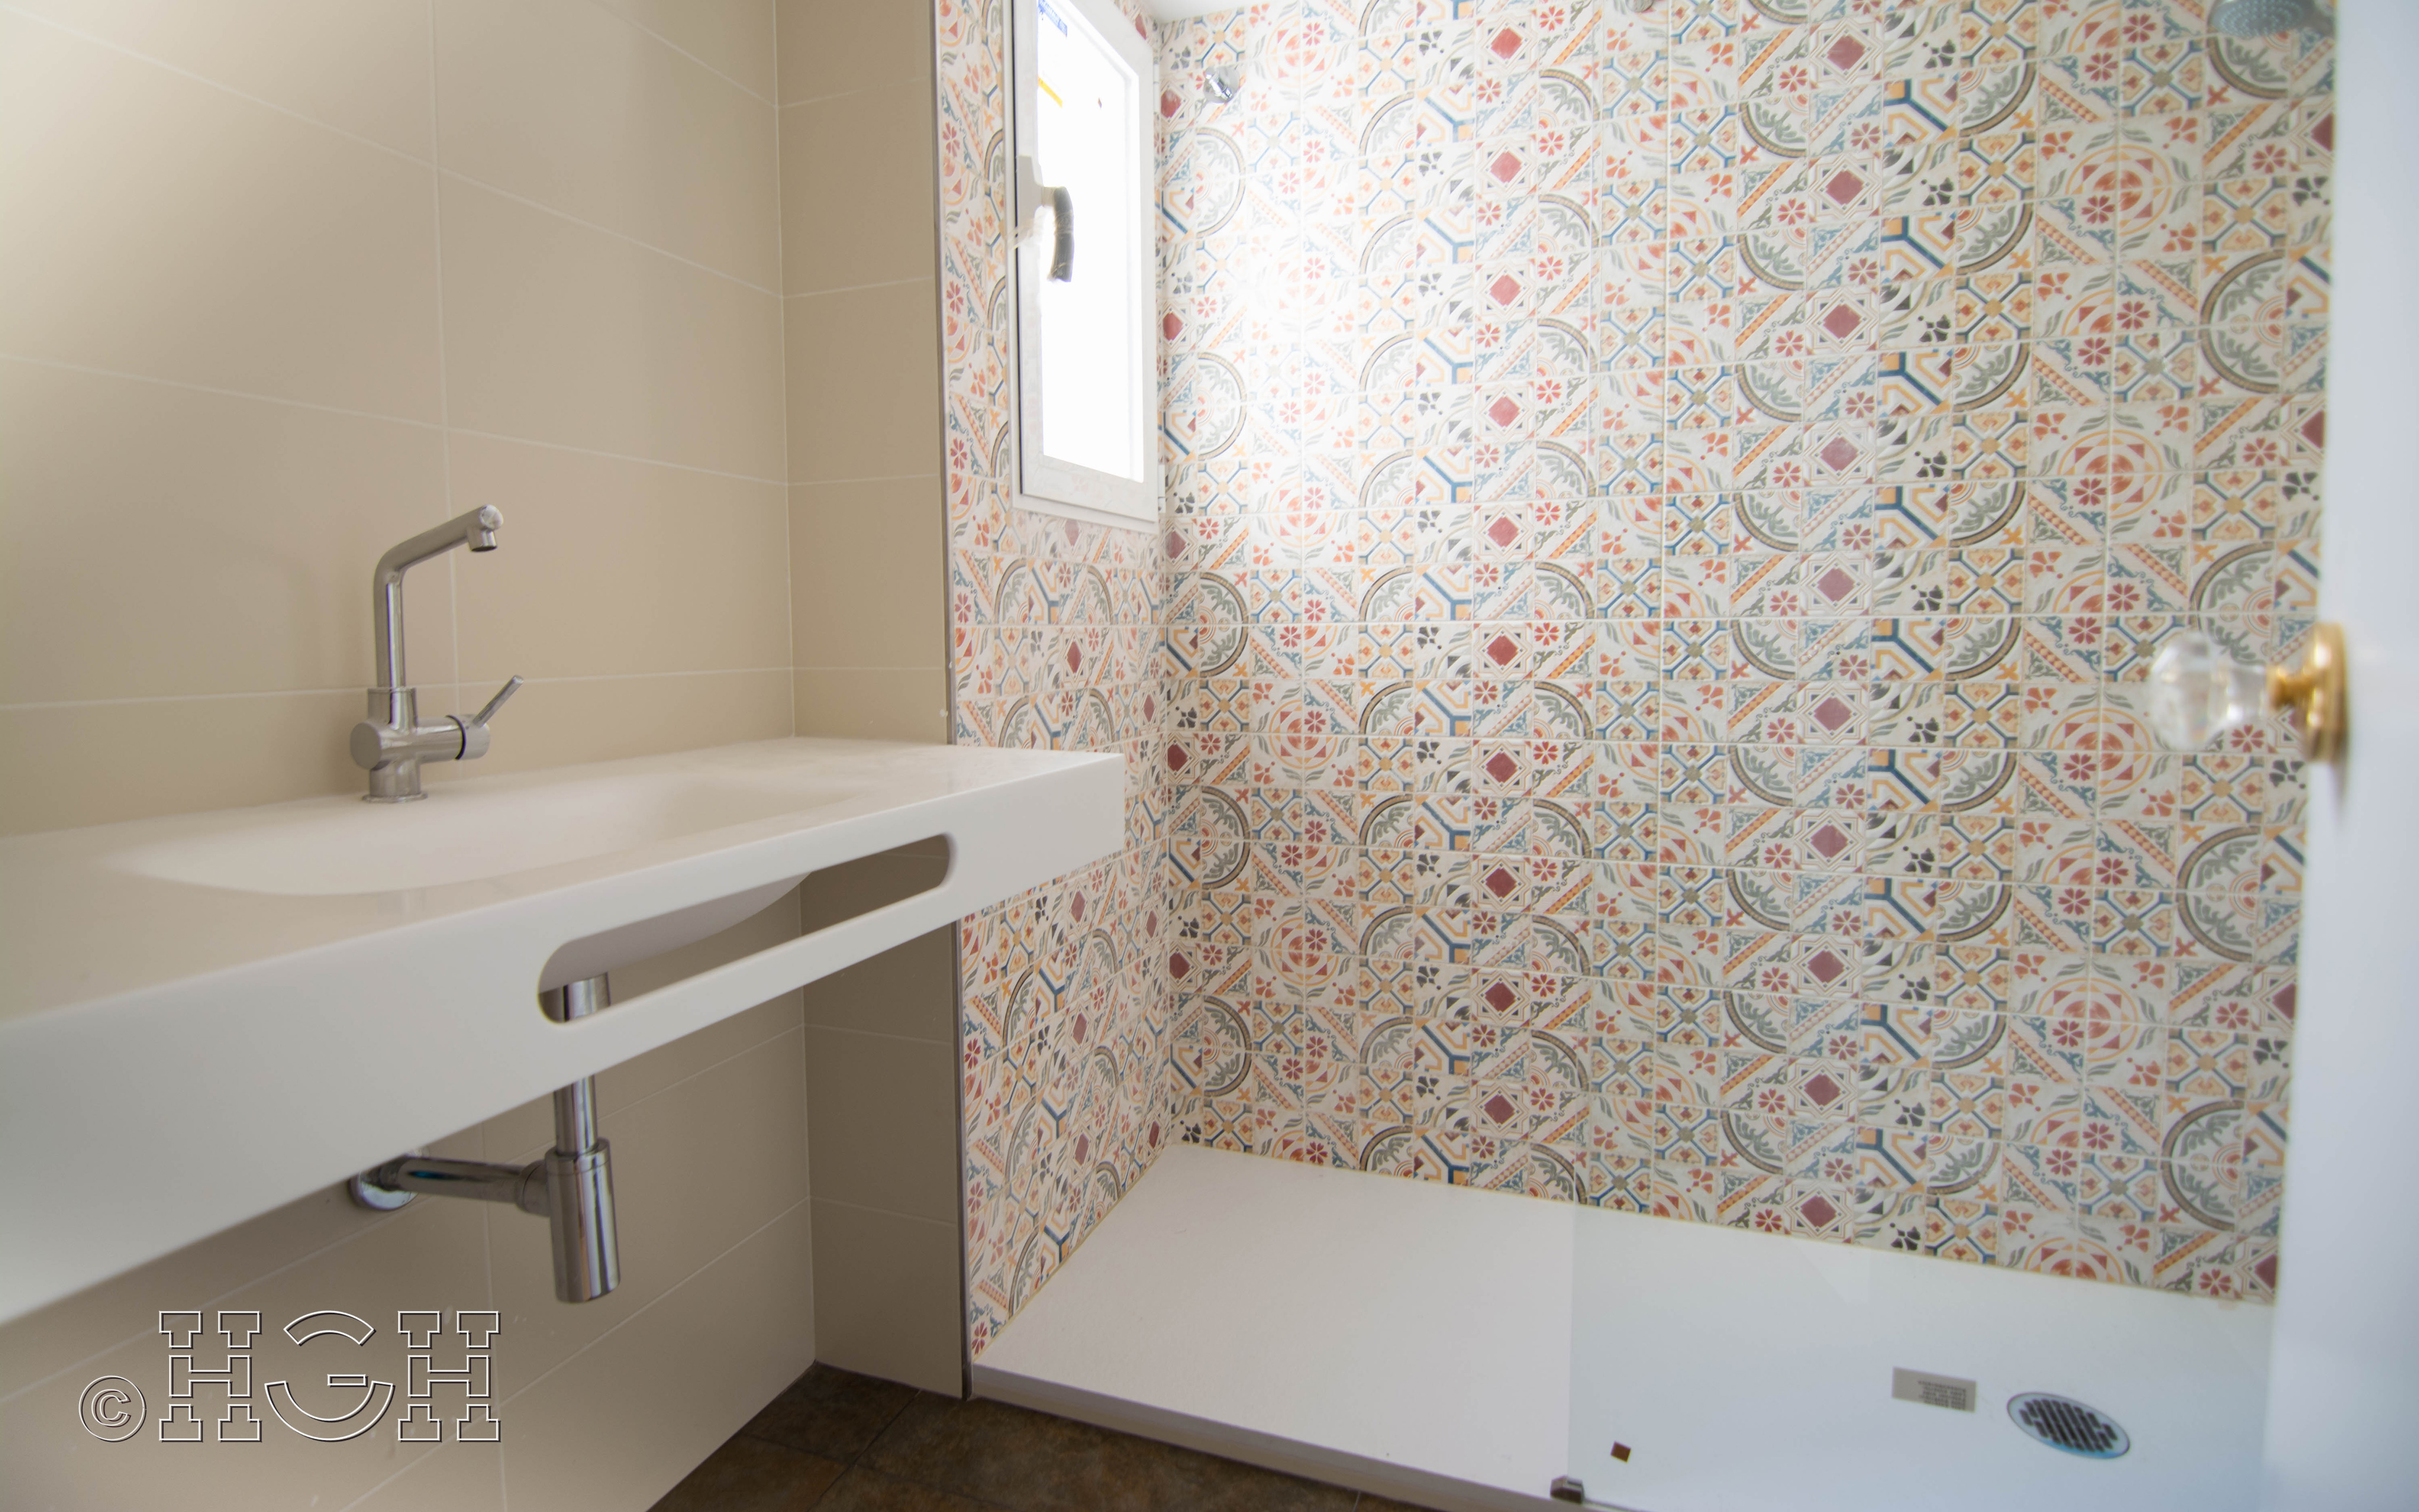 Detalle de acabado de baño con ducha en blanco del piso en valencia. Construcción y reforma realizada íntegramente por personal de Global Home Happiness.